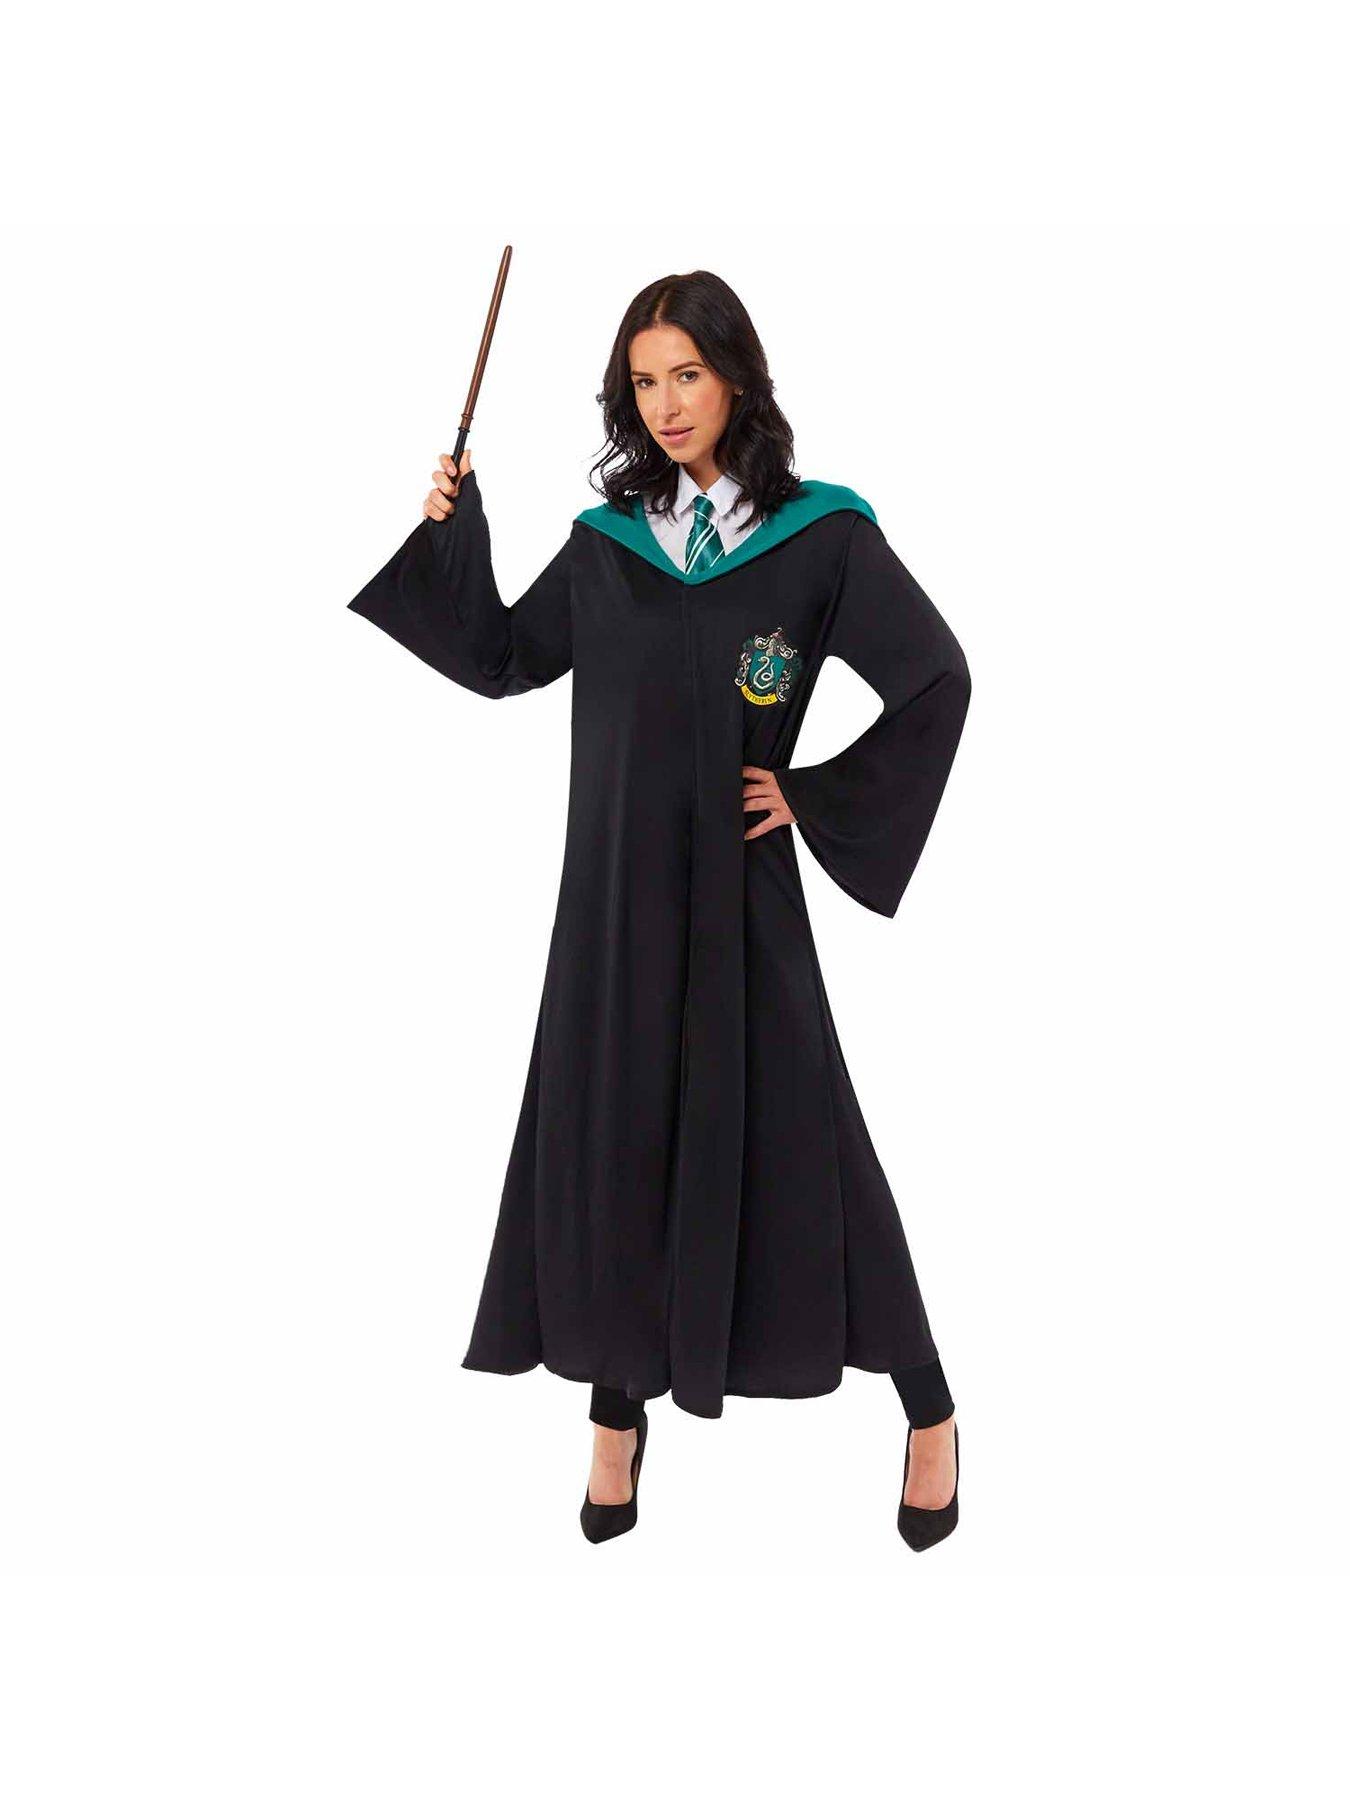 Child Slytherin Robe - Harry Potter